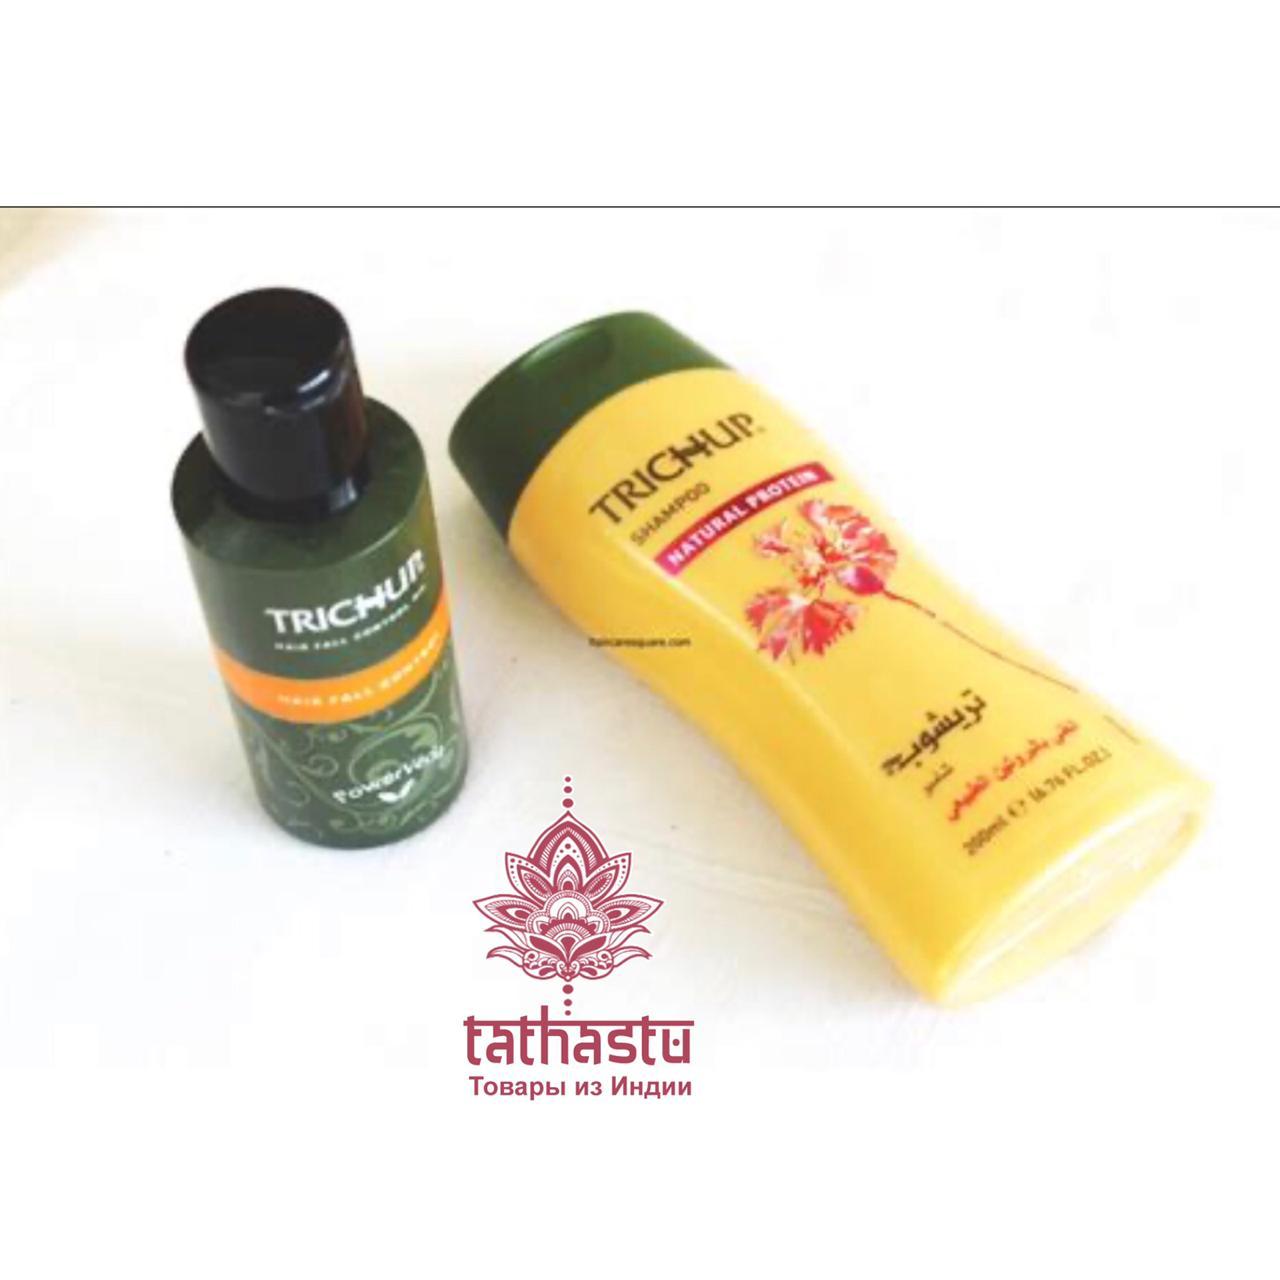 Шампунь для волос с протеином Тричуп (Trichup Natural Protein). Tathastu товары и индии